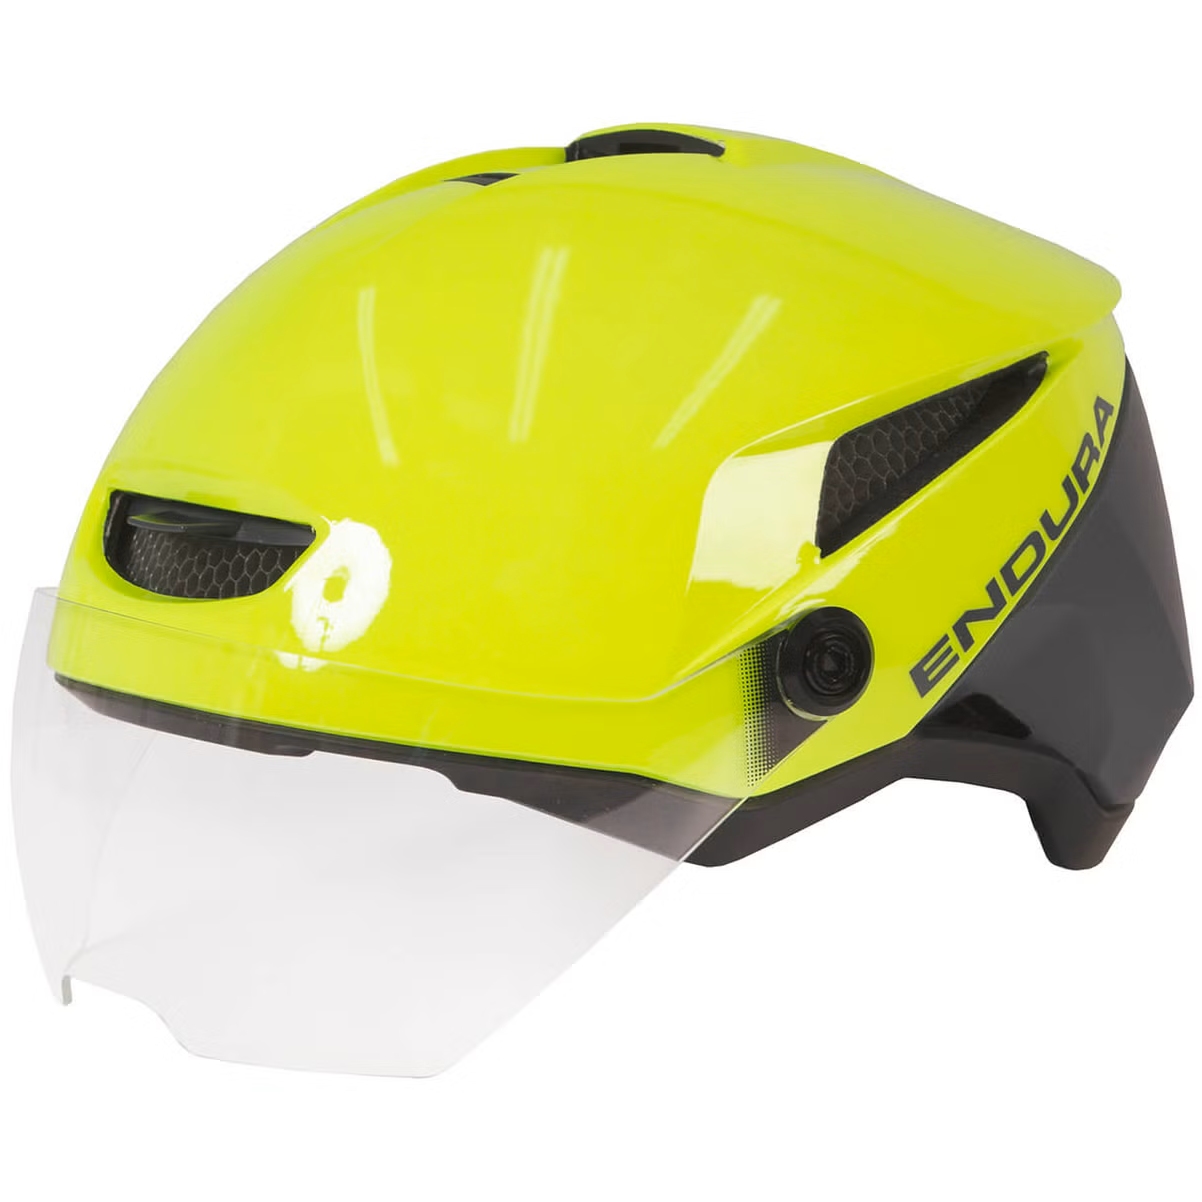 Produktbild von Endura Speed Pedelec Helm - neon-gelb